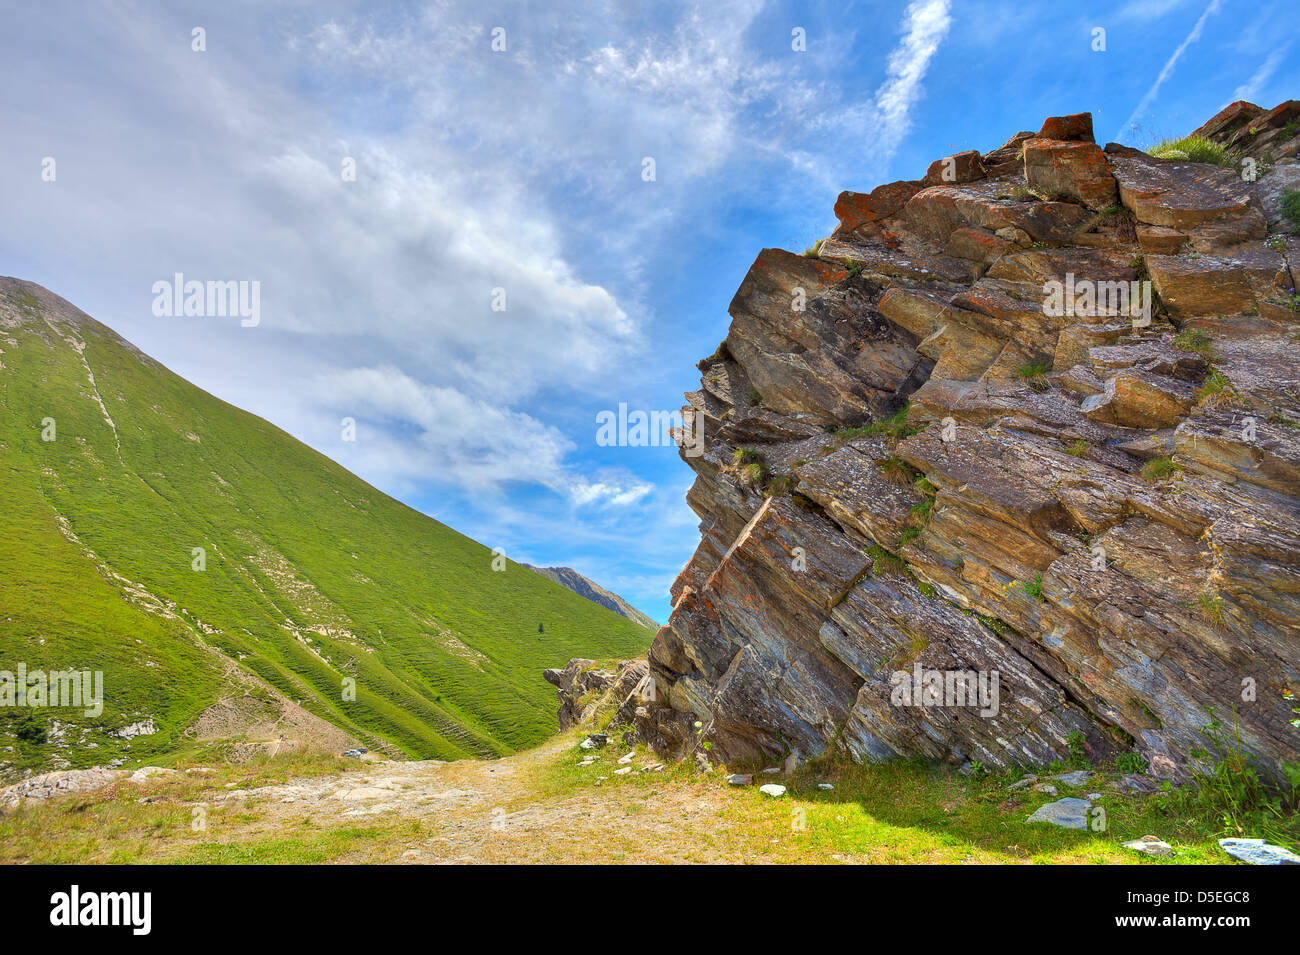 Verdi pendii alpini e formazioni rocciose sotto il bellissimo cielo al Colle delle Finestre passano nelle Alpi italiane. Foto Stock